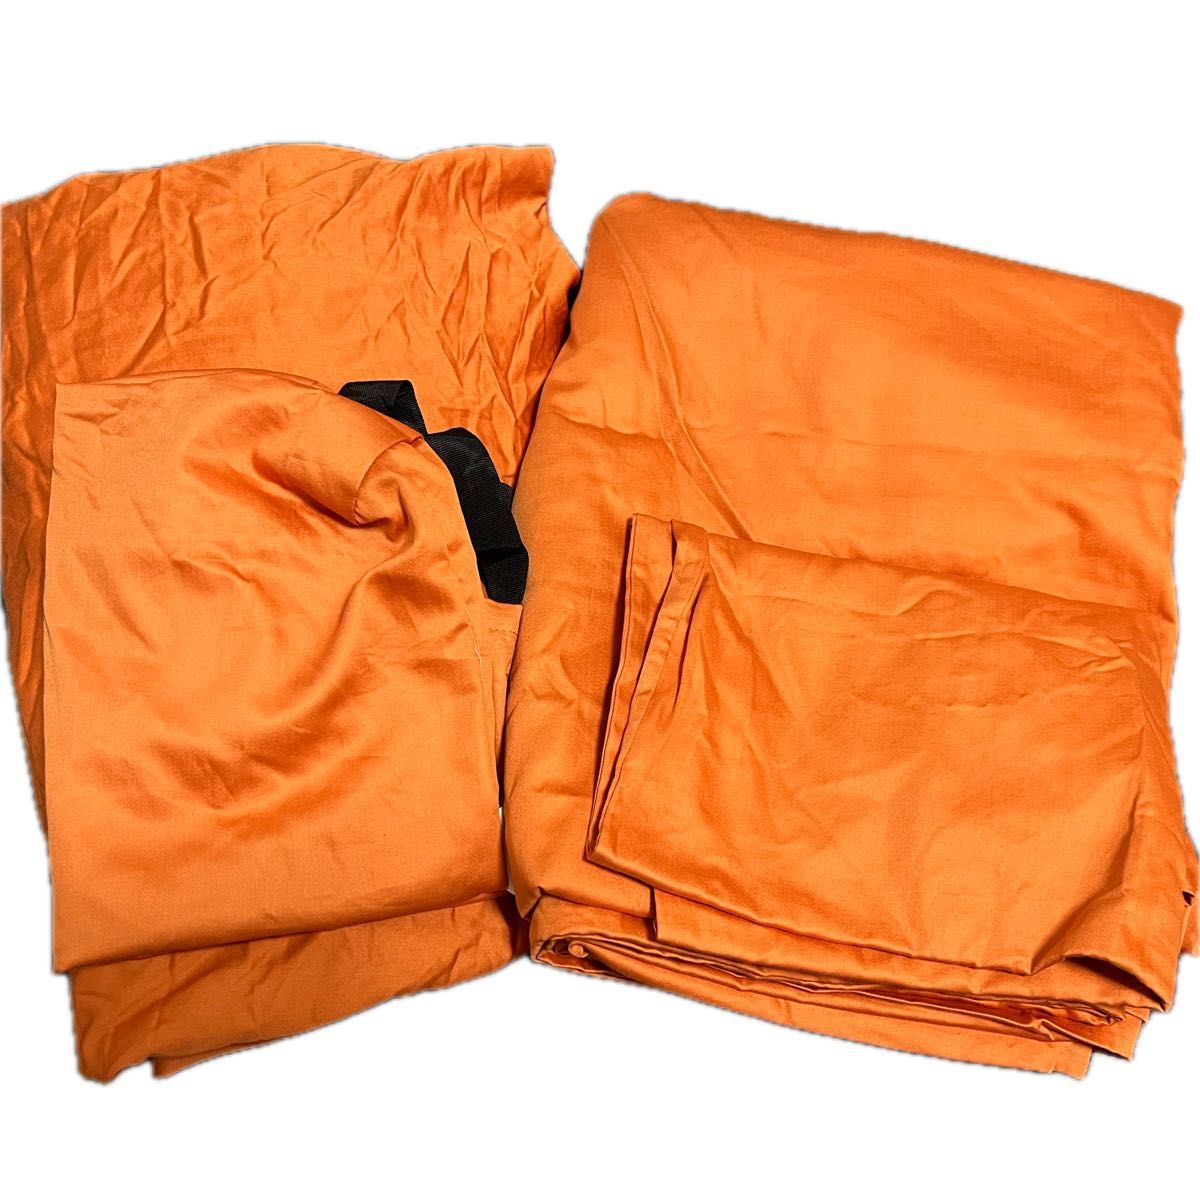 ボックスシーツ セット シングル バーントオレンジ 収納袋付き　布団　枕カバー